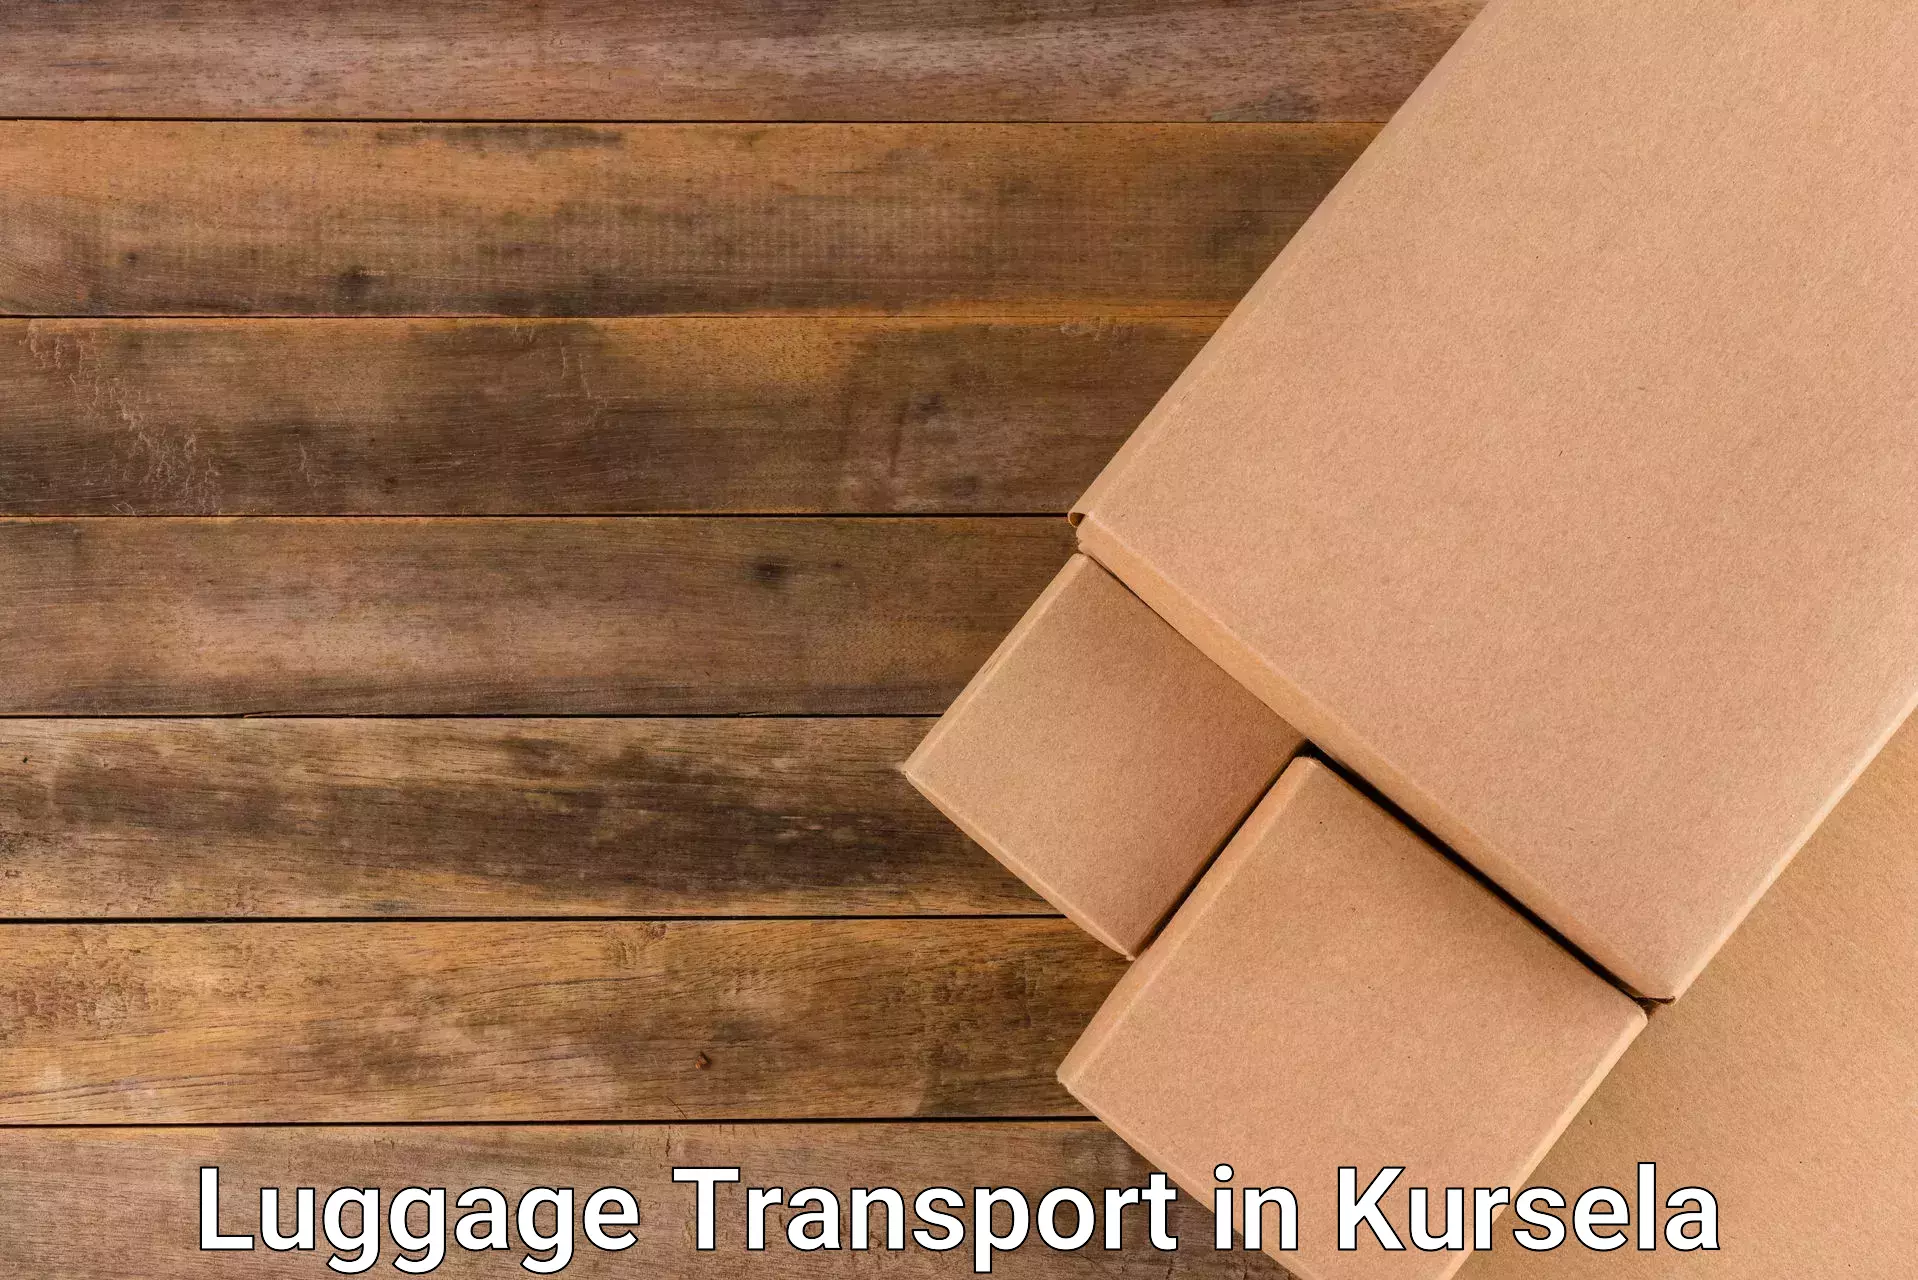 Corporate baggage transport in Kursela